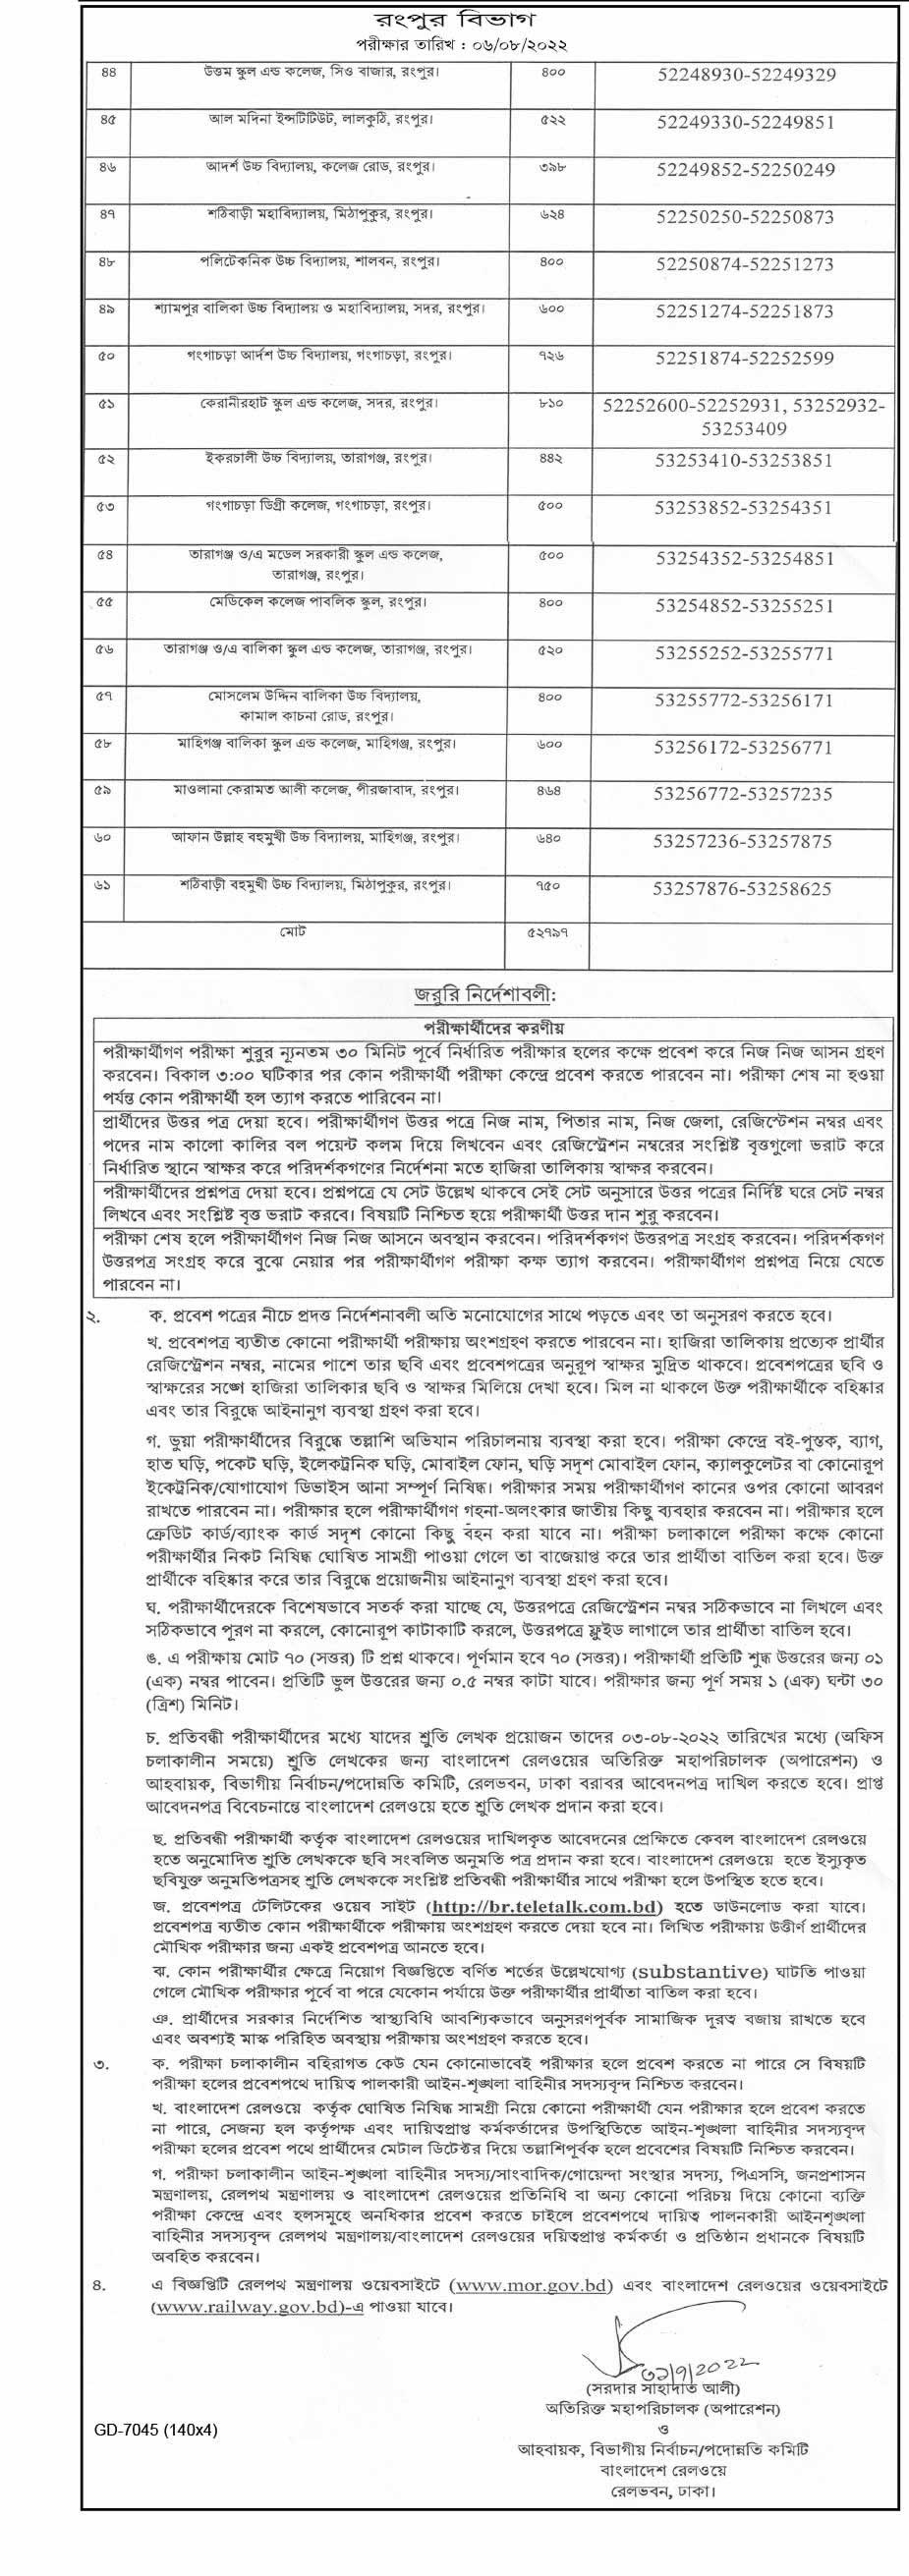 Bangladesh Railway Exam Date Published